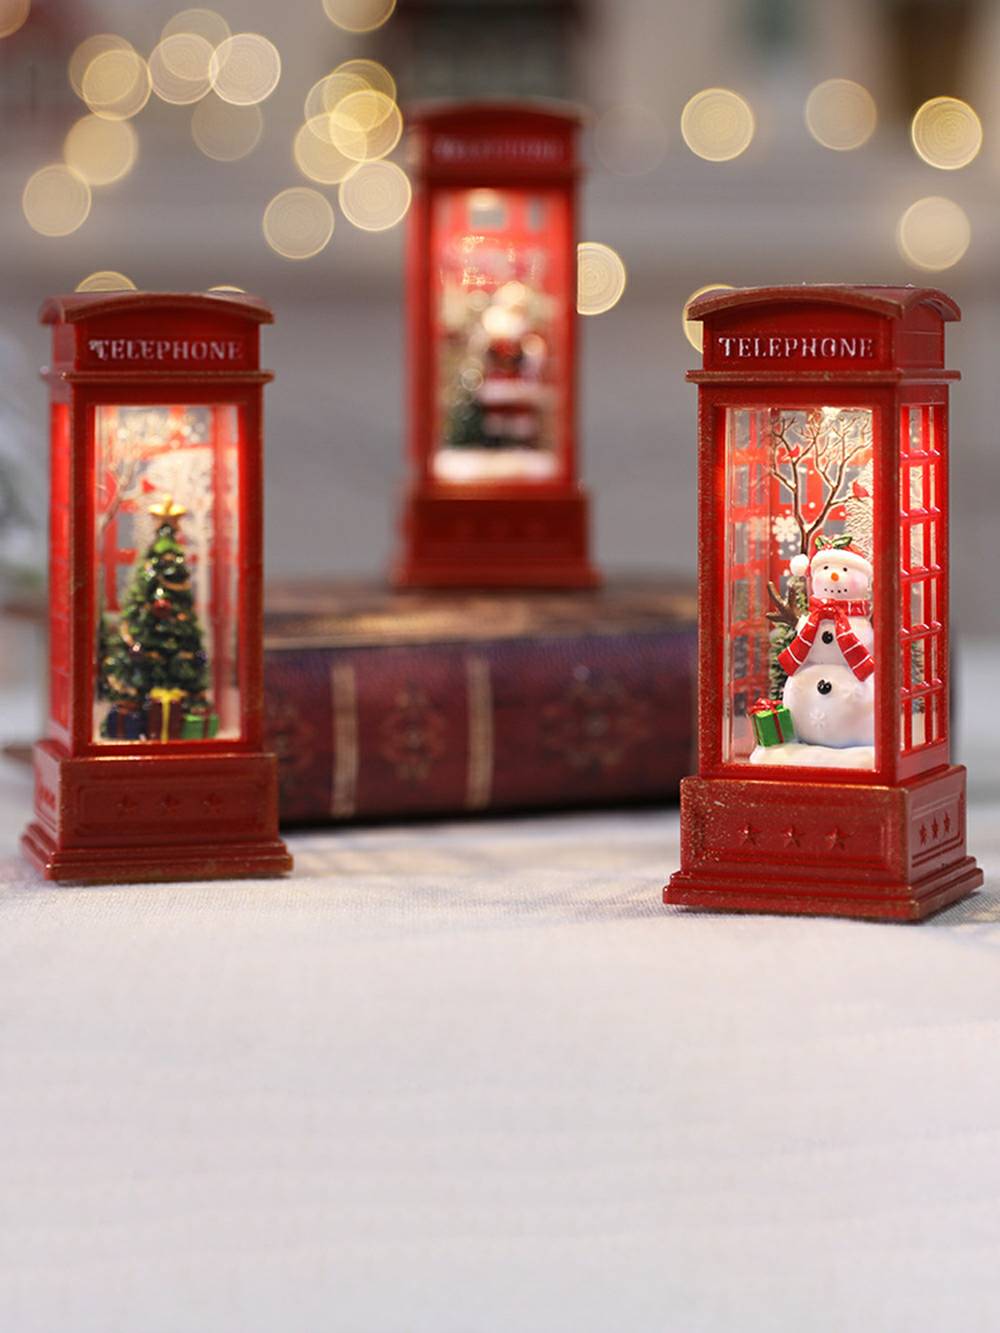 Decorazione natalizia con fiamma per cabina telefonica, lampada a olio, pupazzo di neve